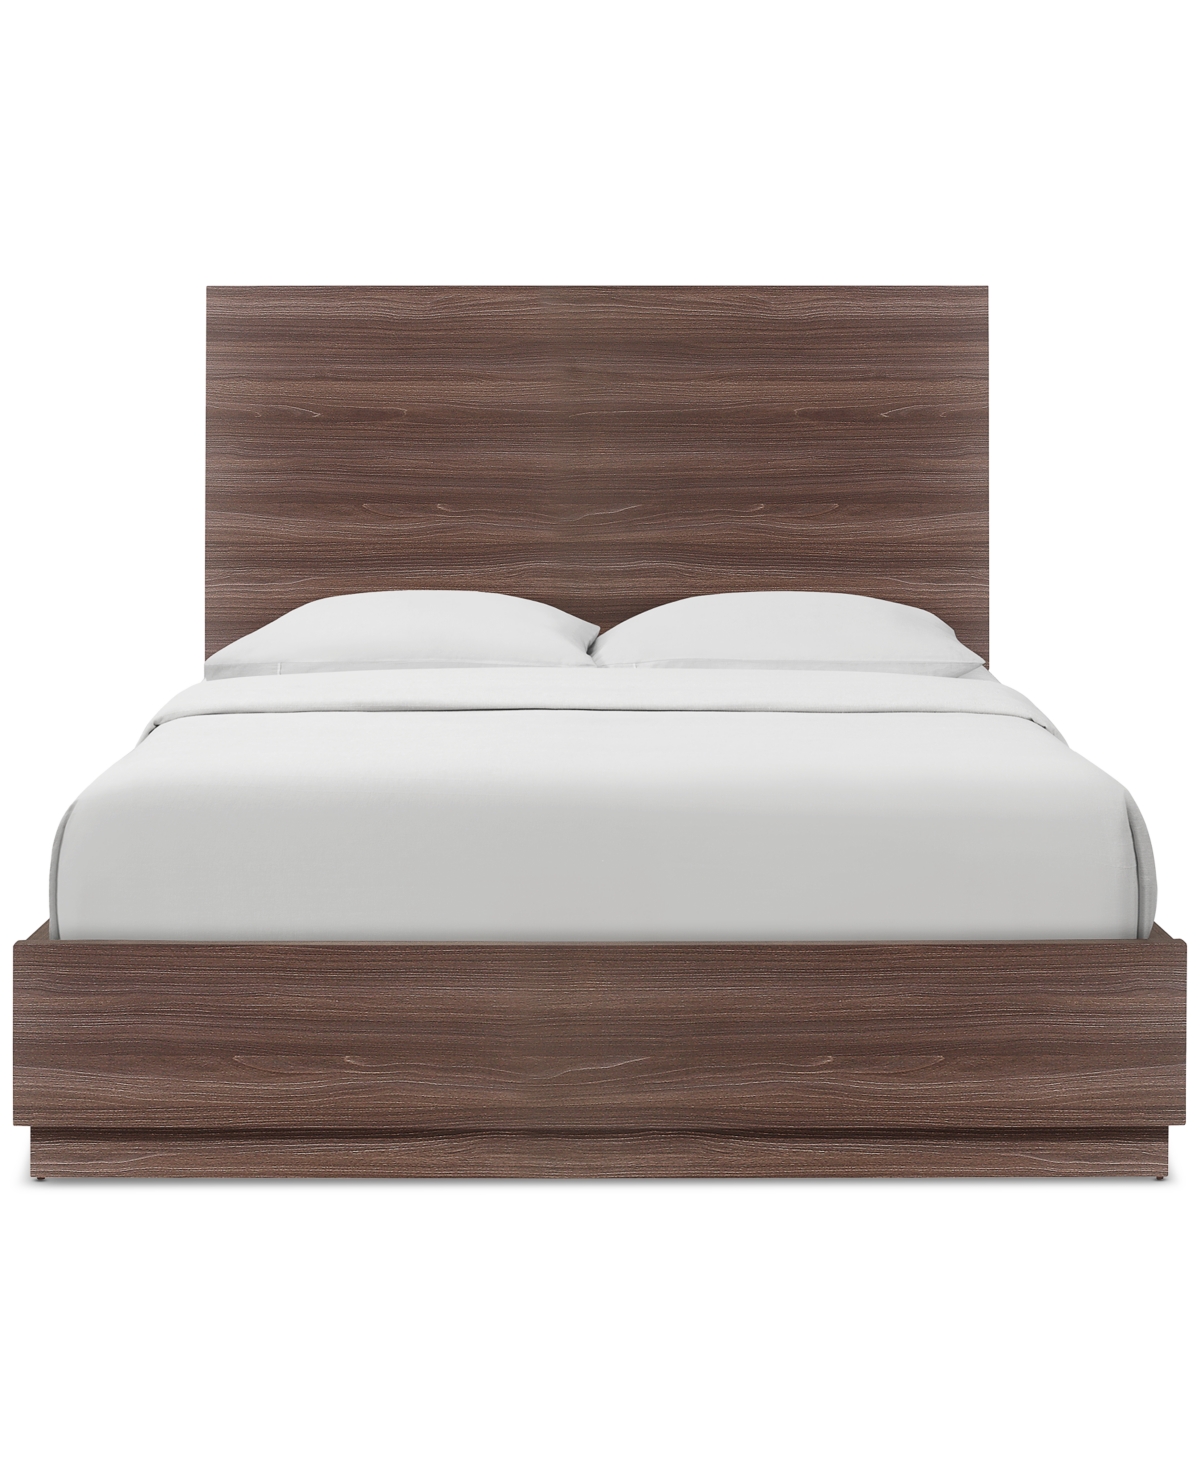 Furniture Jorah Laminate King Bed In Brown